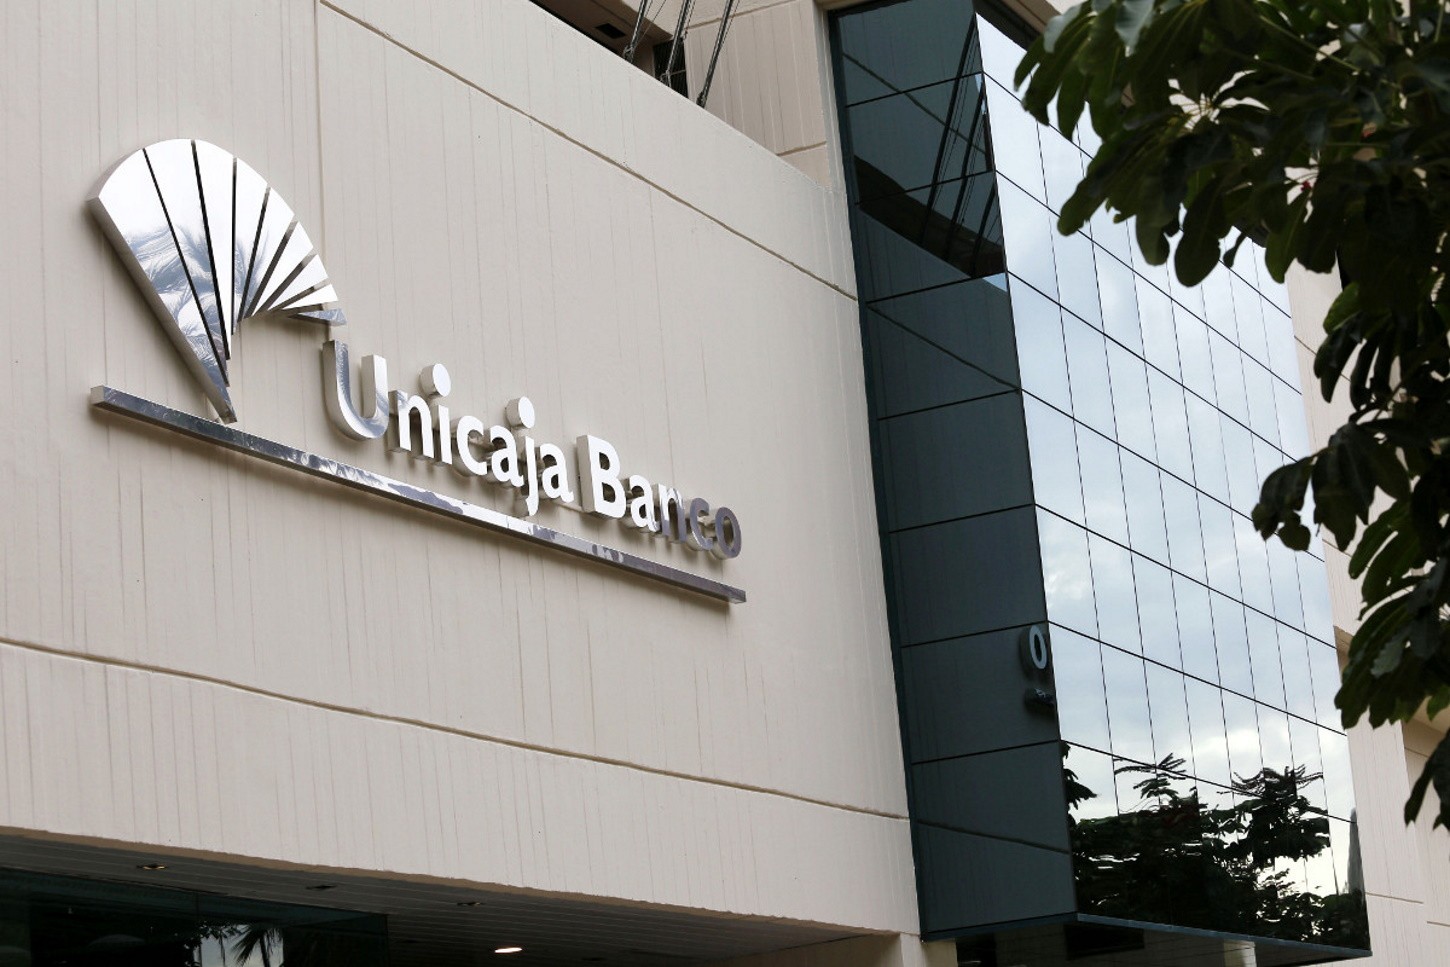 Unicaja guanya 285 milions fins al setembre, un 5% més, després de pagar l'impost a la banca